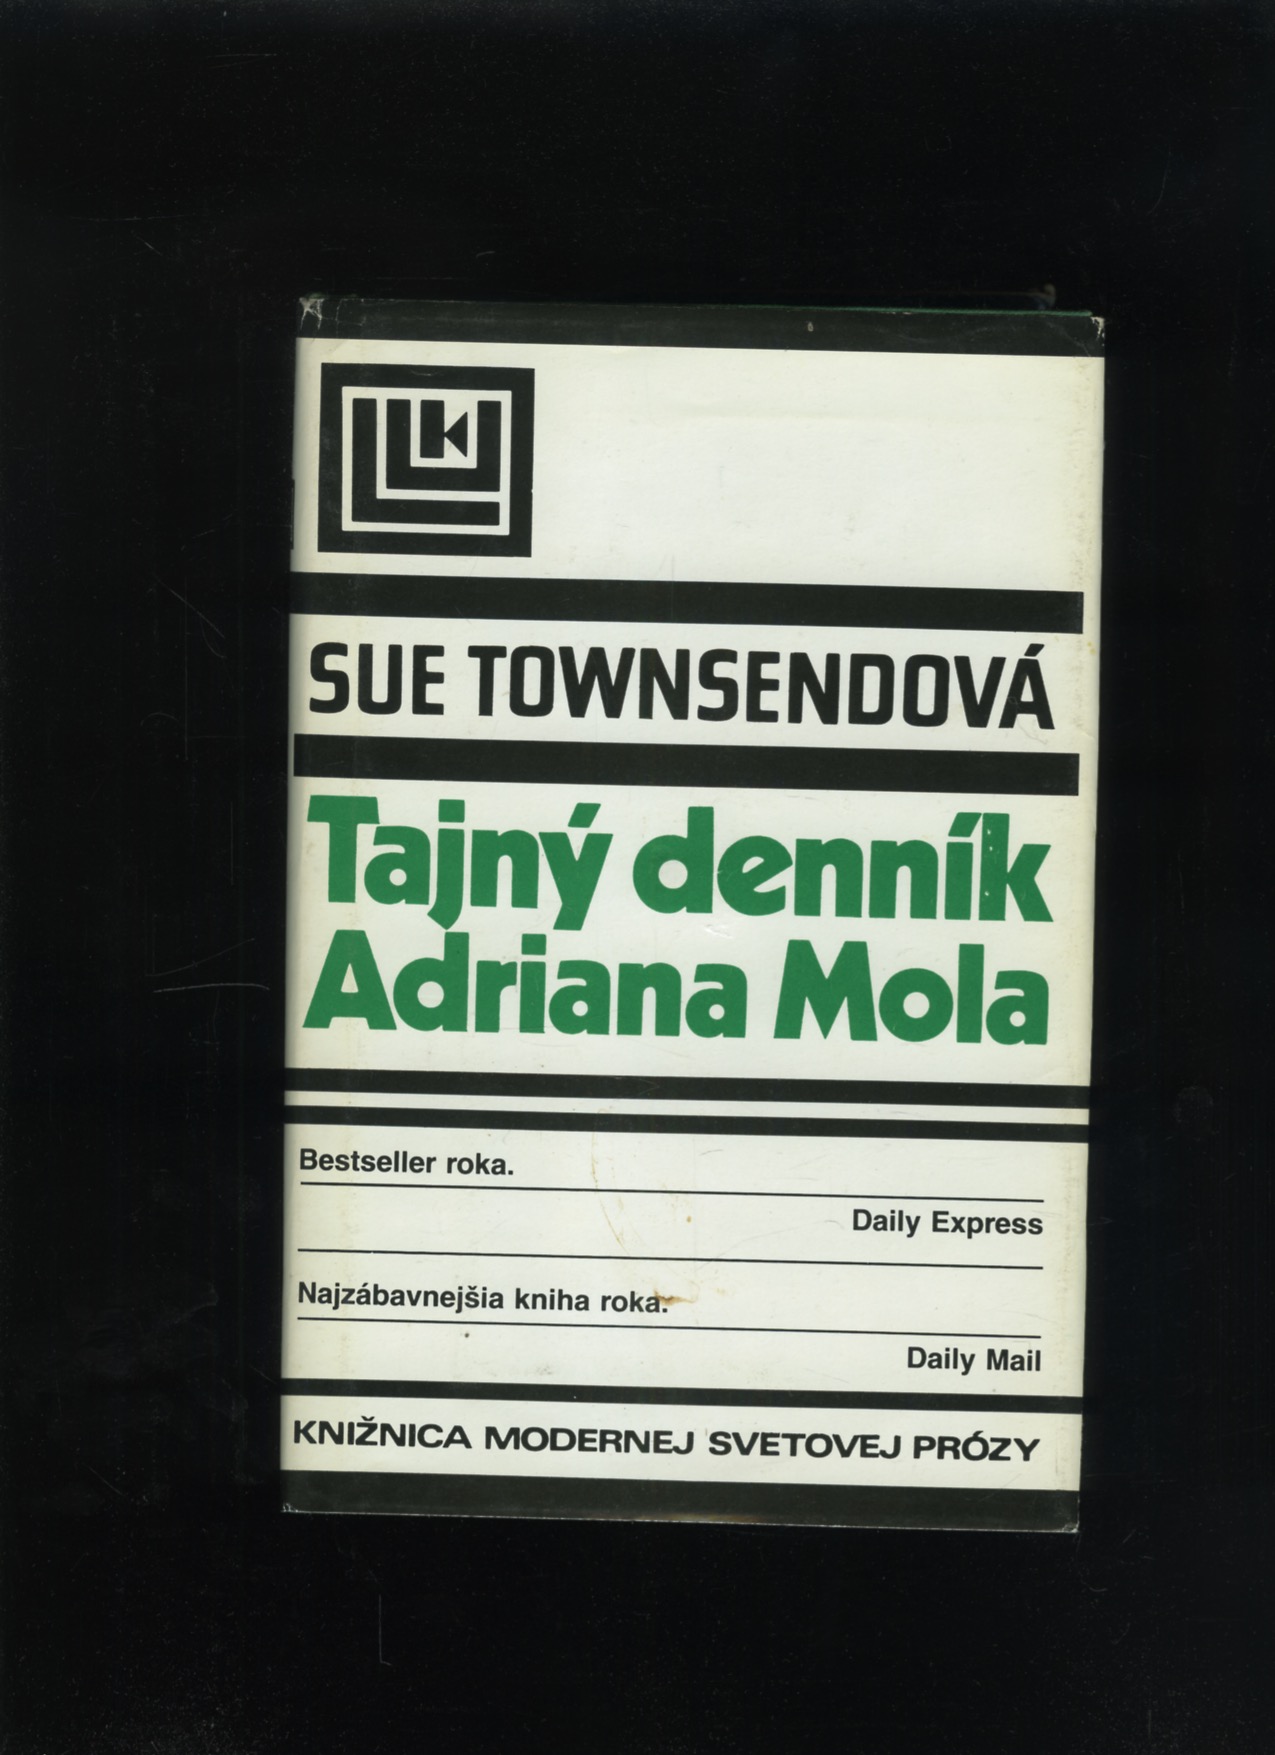 Tajný denník Adriana Mola (Sue Townsendová)